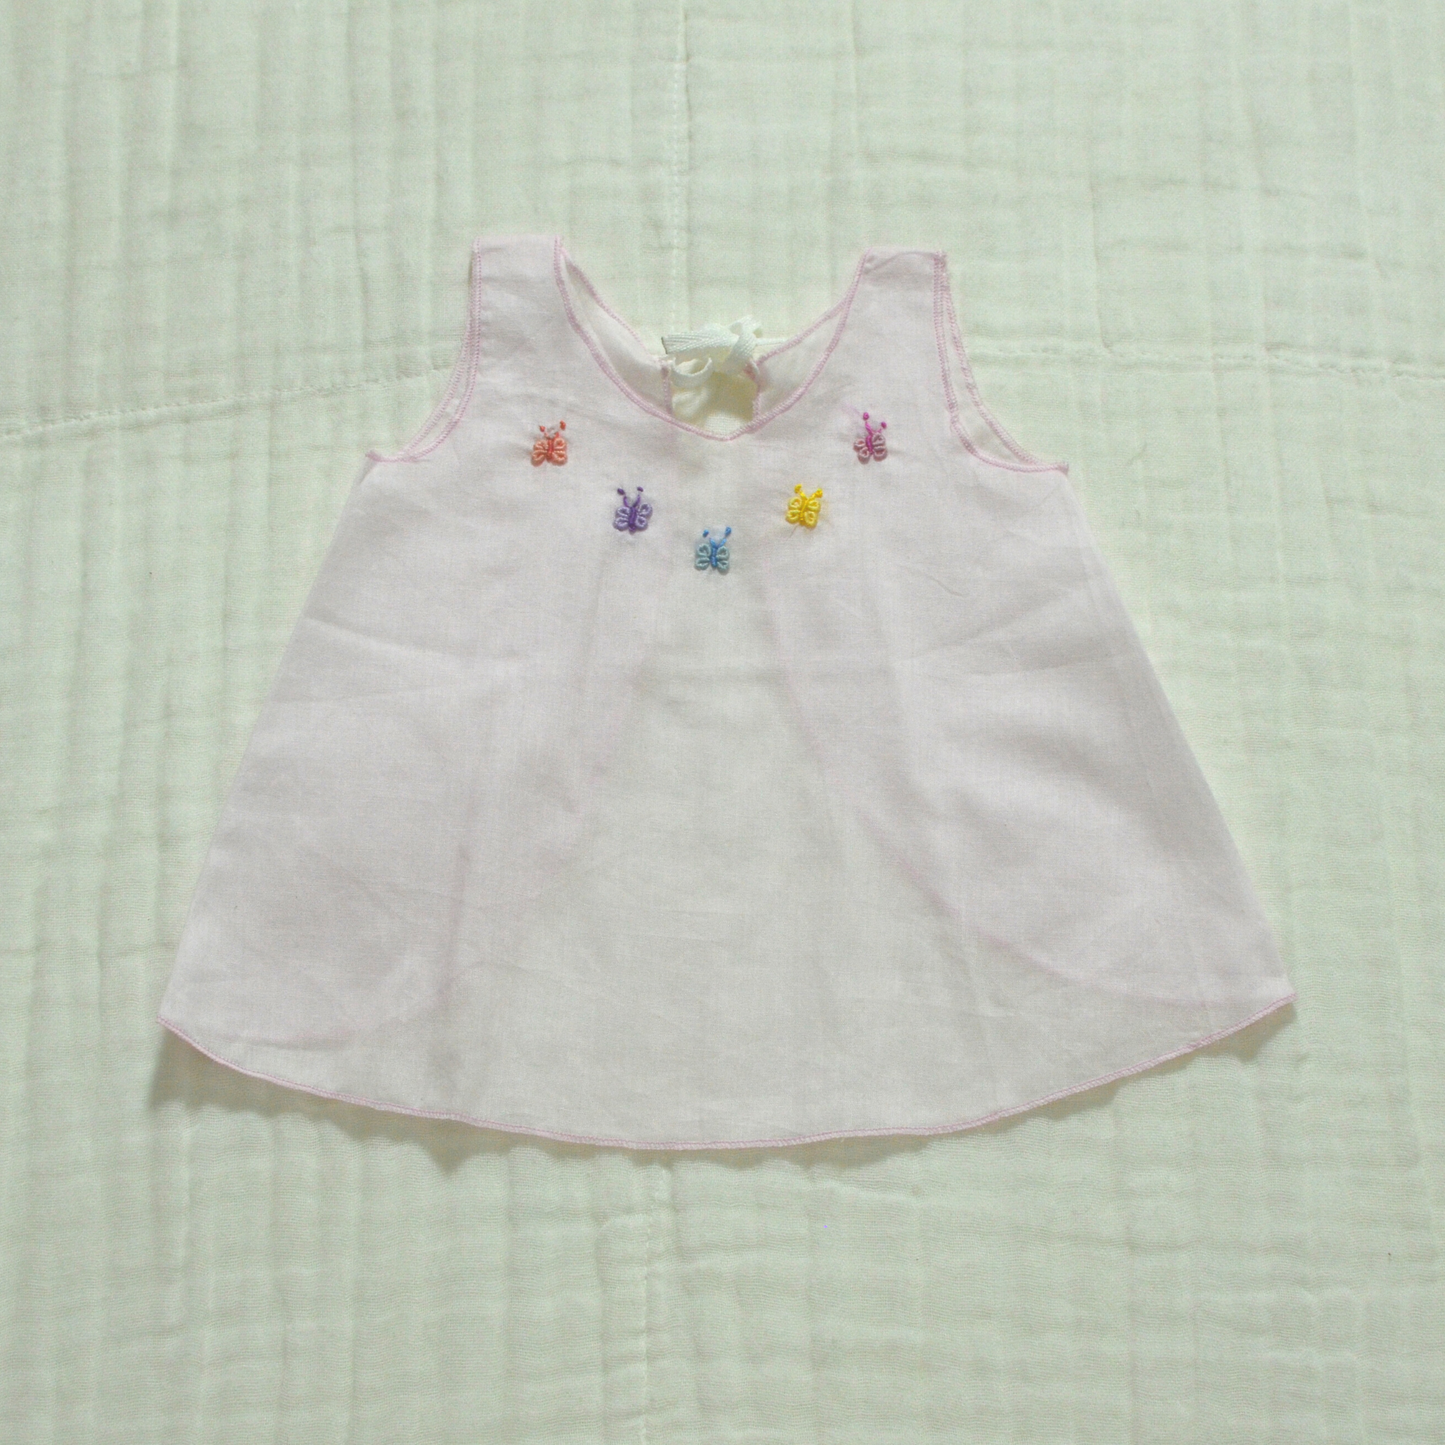 Handmade Newborn Dress Collection - Muslin IV